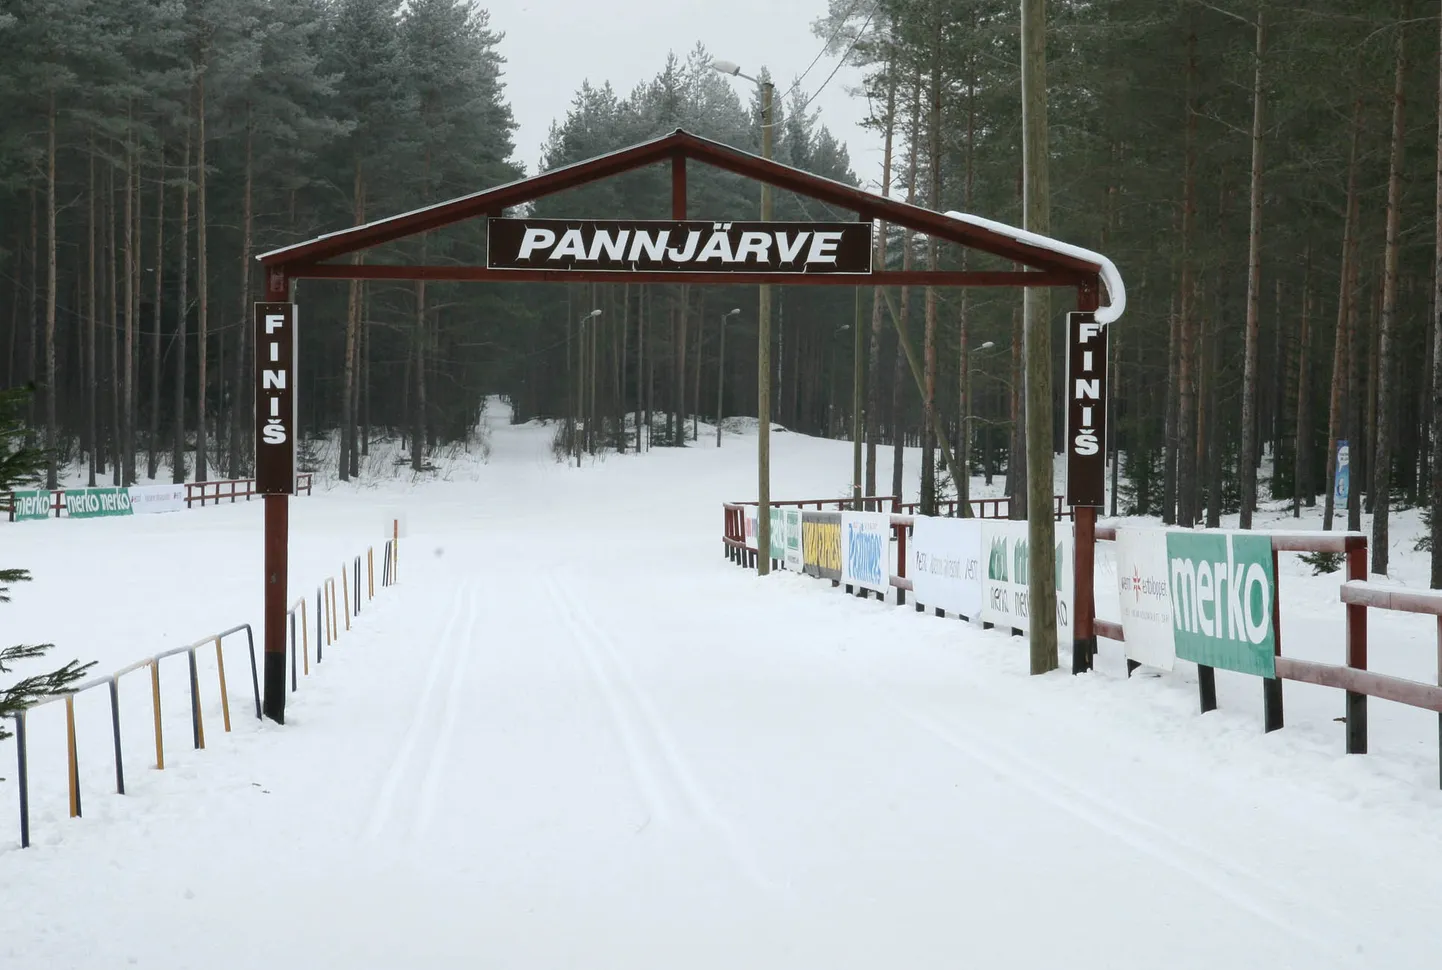 Алутагузеский центр отдыха и спорта расположен в Паннъярве.